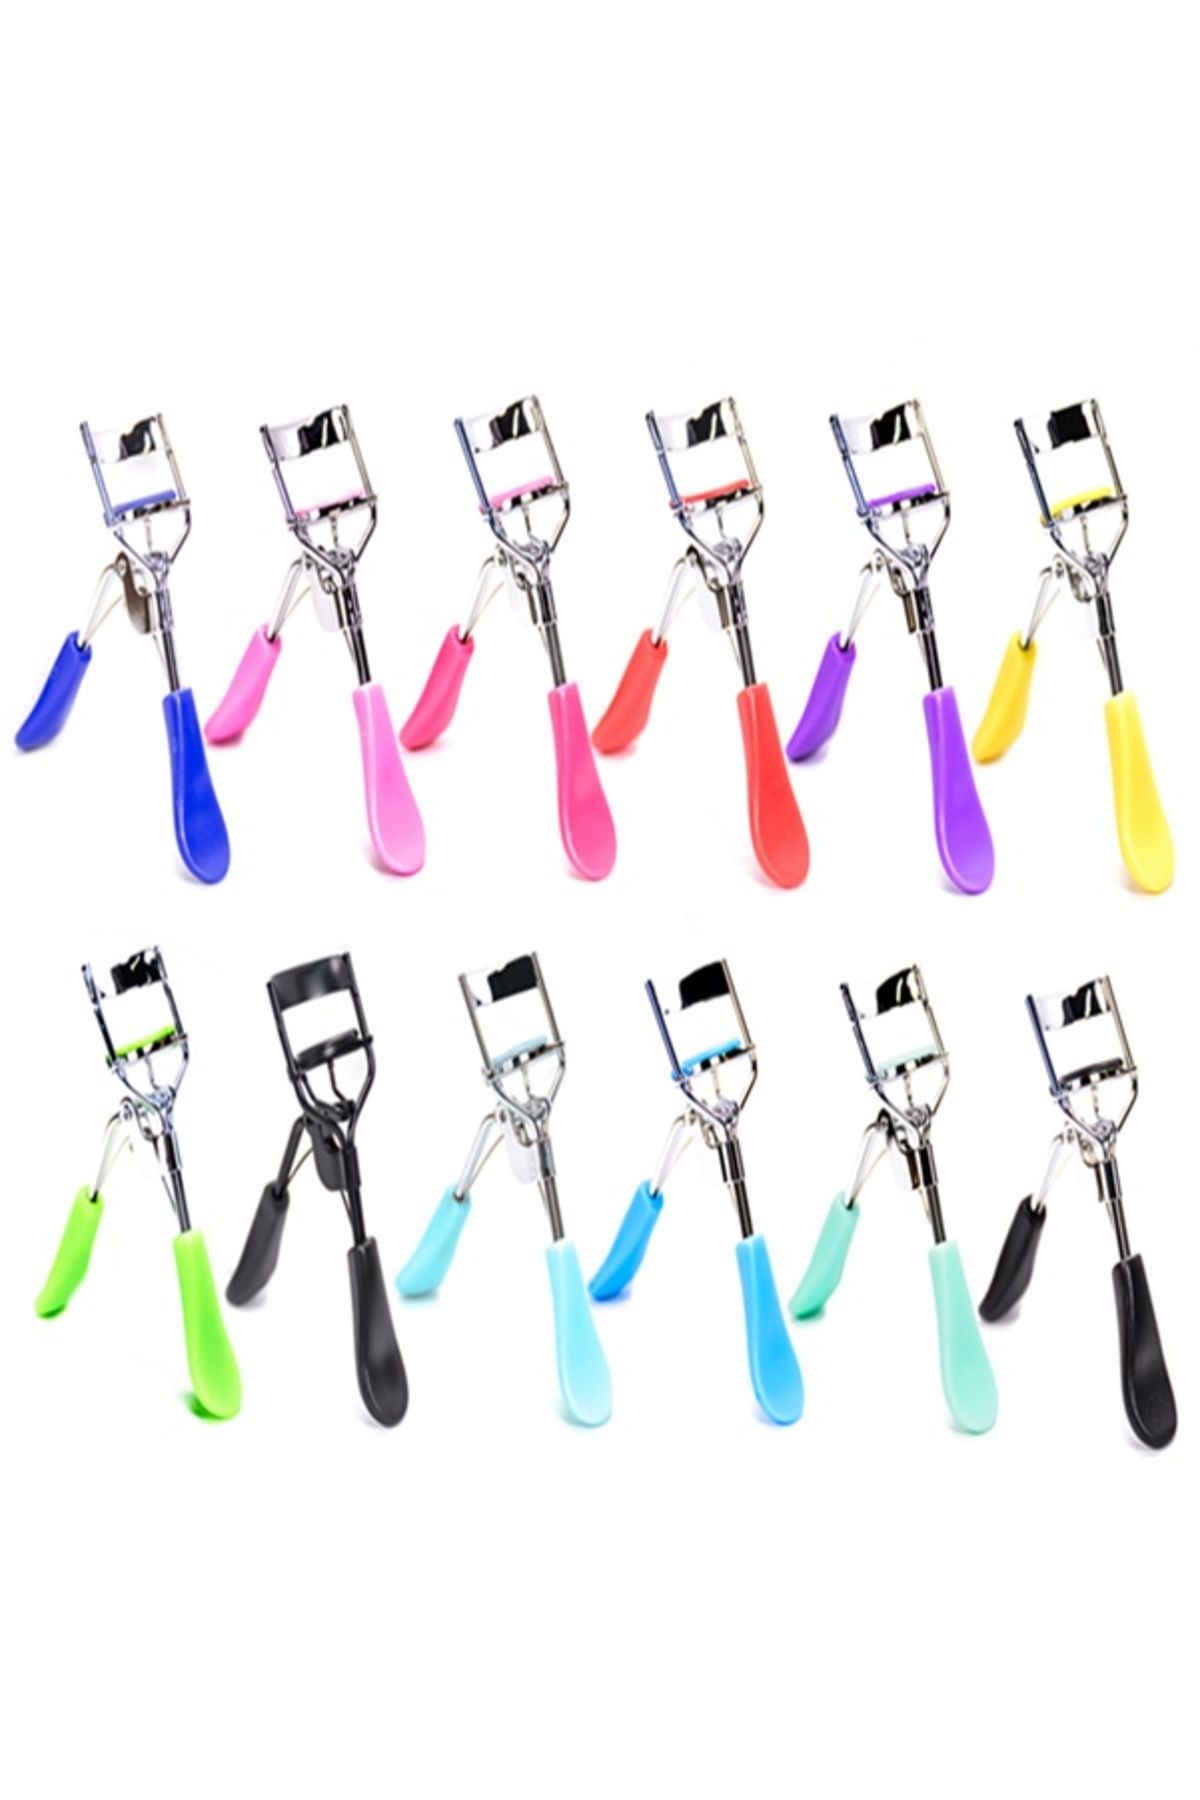 Xolo Lüks Neon Turkuaz Kirpik Kıvırıcı 3 Kat Daha Güçlü Full Lash Curler Kirpik Kıvırma Makası XLKK51